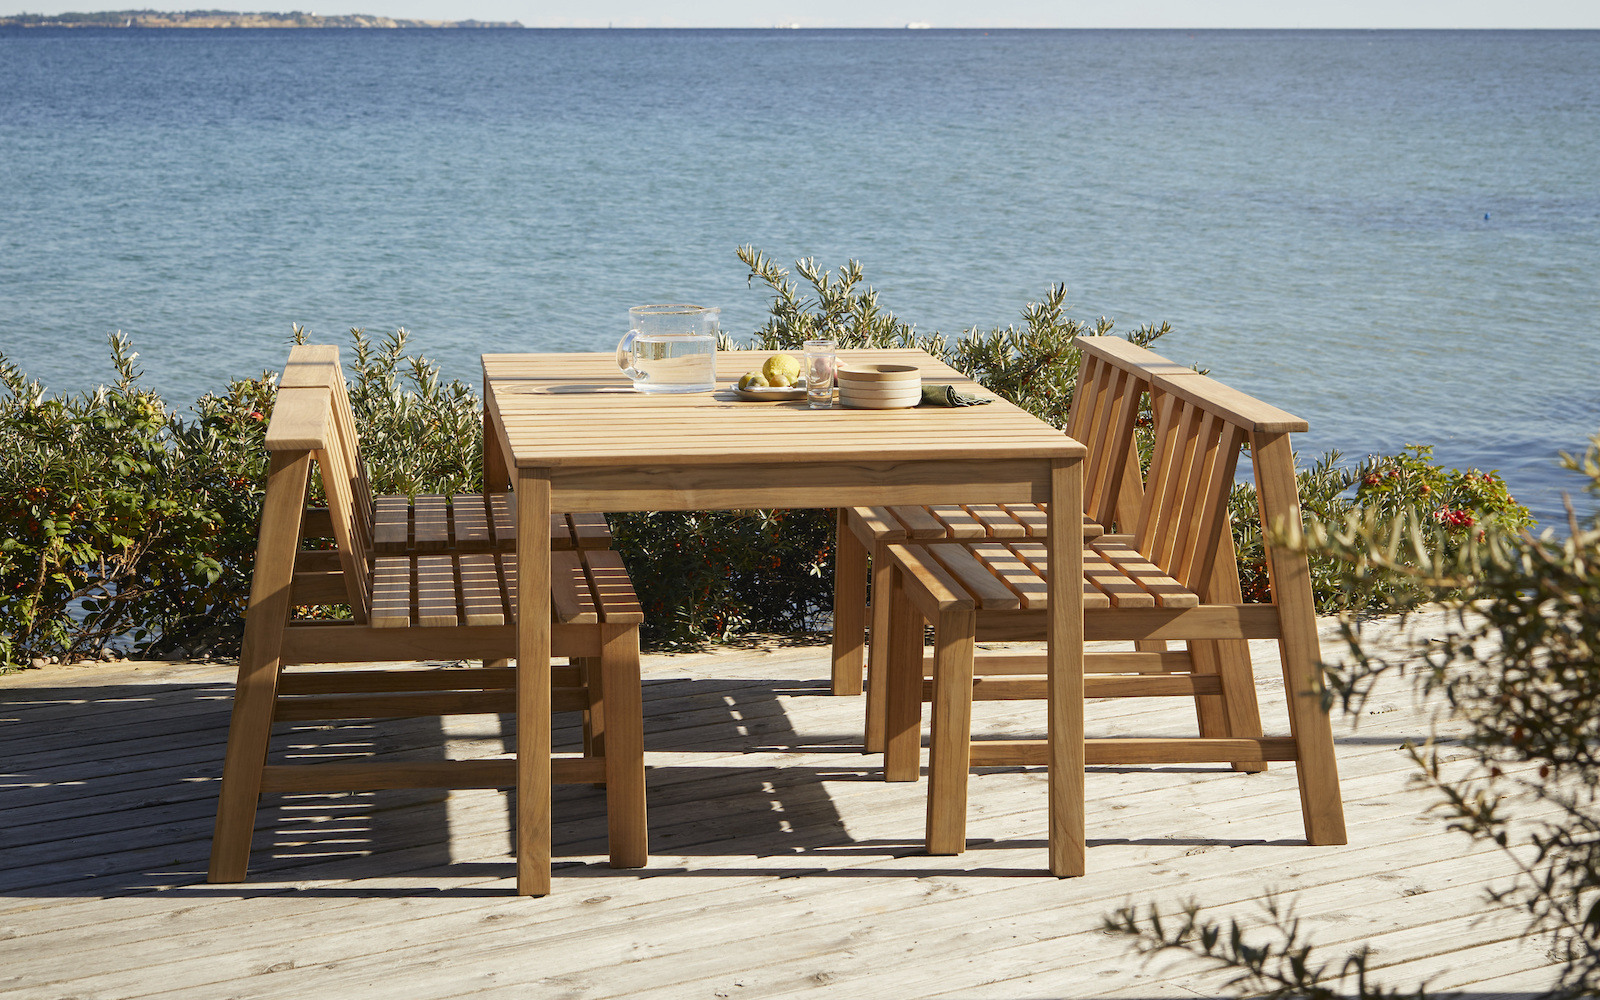 Outdoor furniture overlooking sea